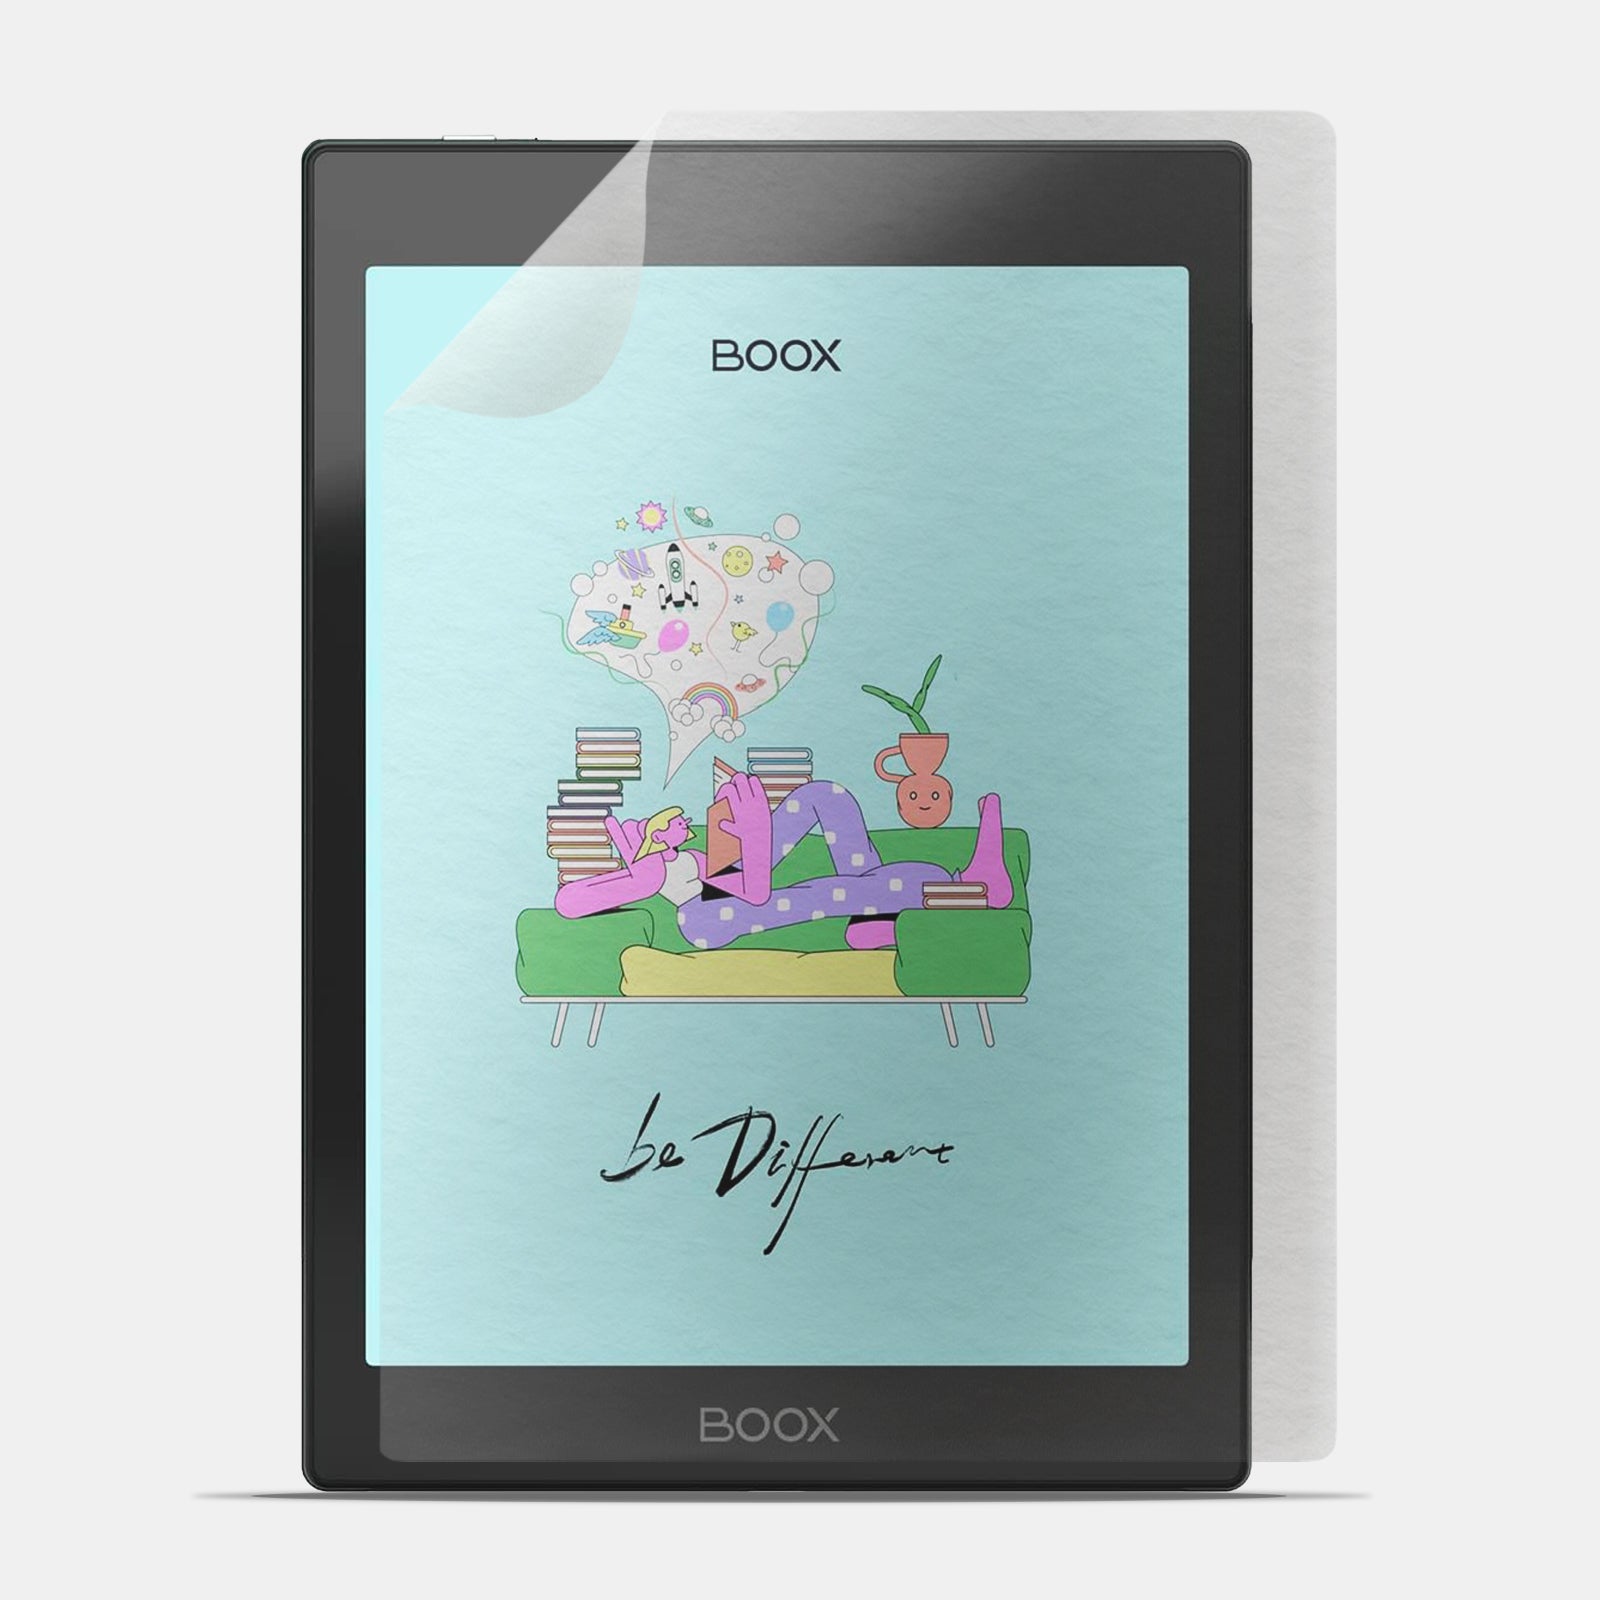 Descubre ya el protector de pantalla para Onyx BOOX en la tienda en línea  de doodroo! ¡Escribe y dibuja en tu tableta igual que sobre papel!